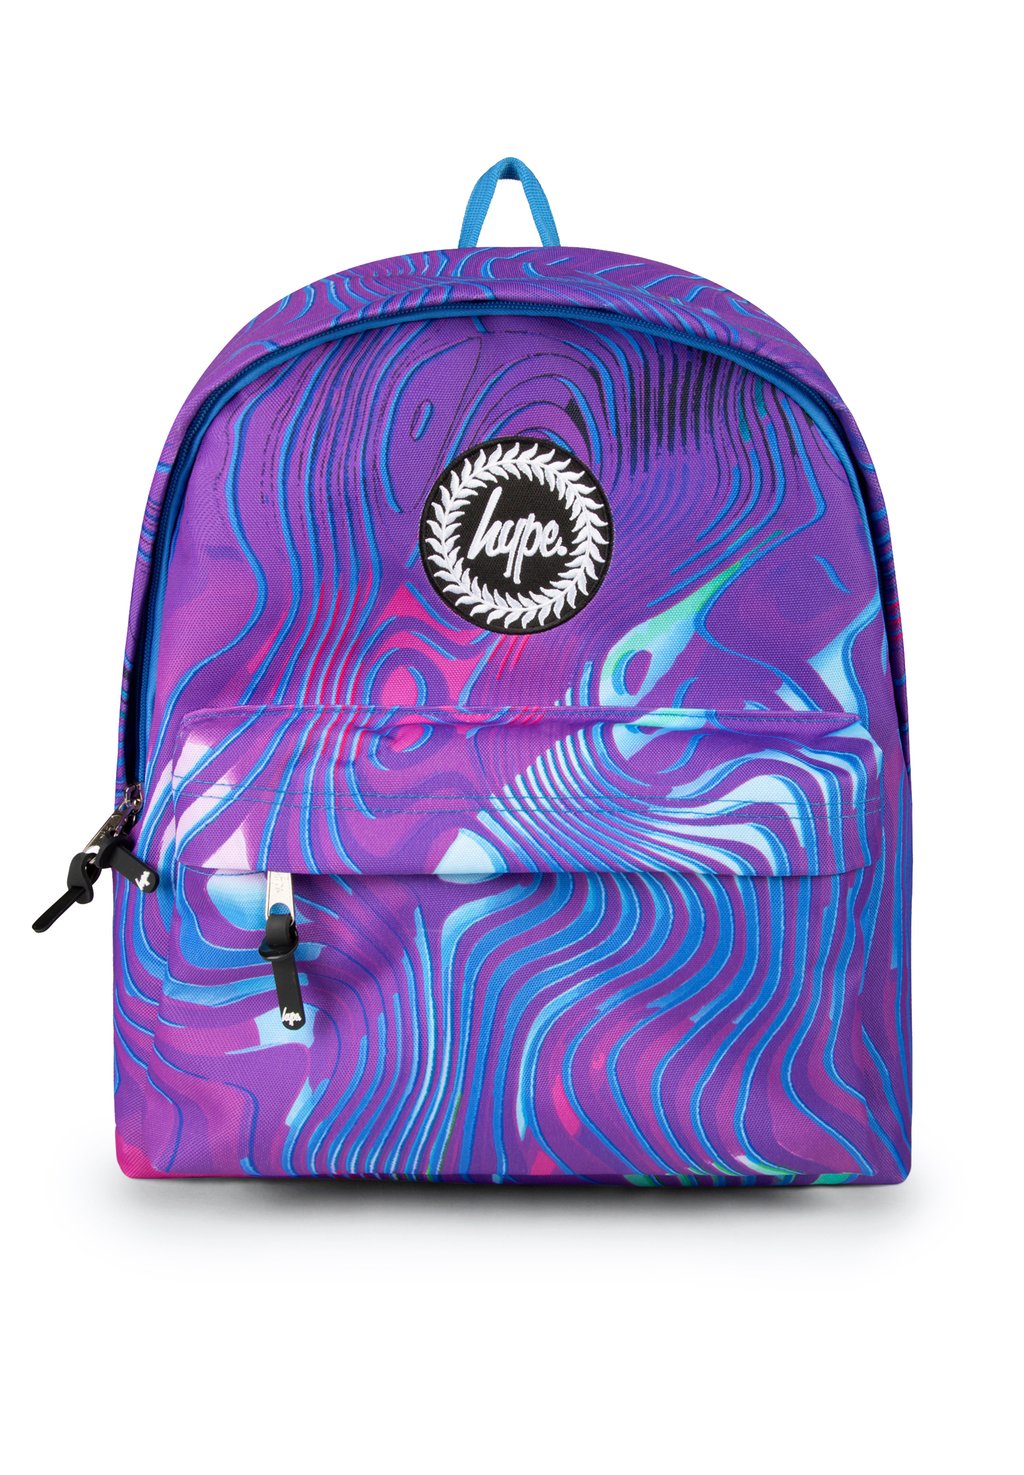 Туристический рюкзак VAPOUR WAVE Hype, цвет multi туристический рюкзак malibu fade hype цвет multi